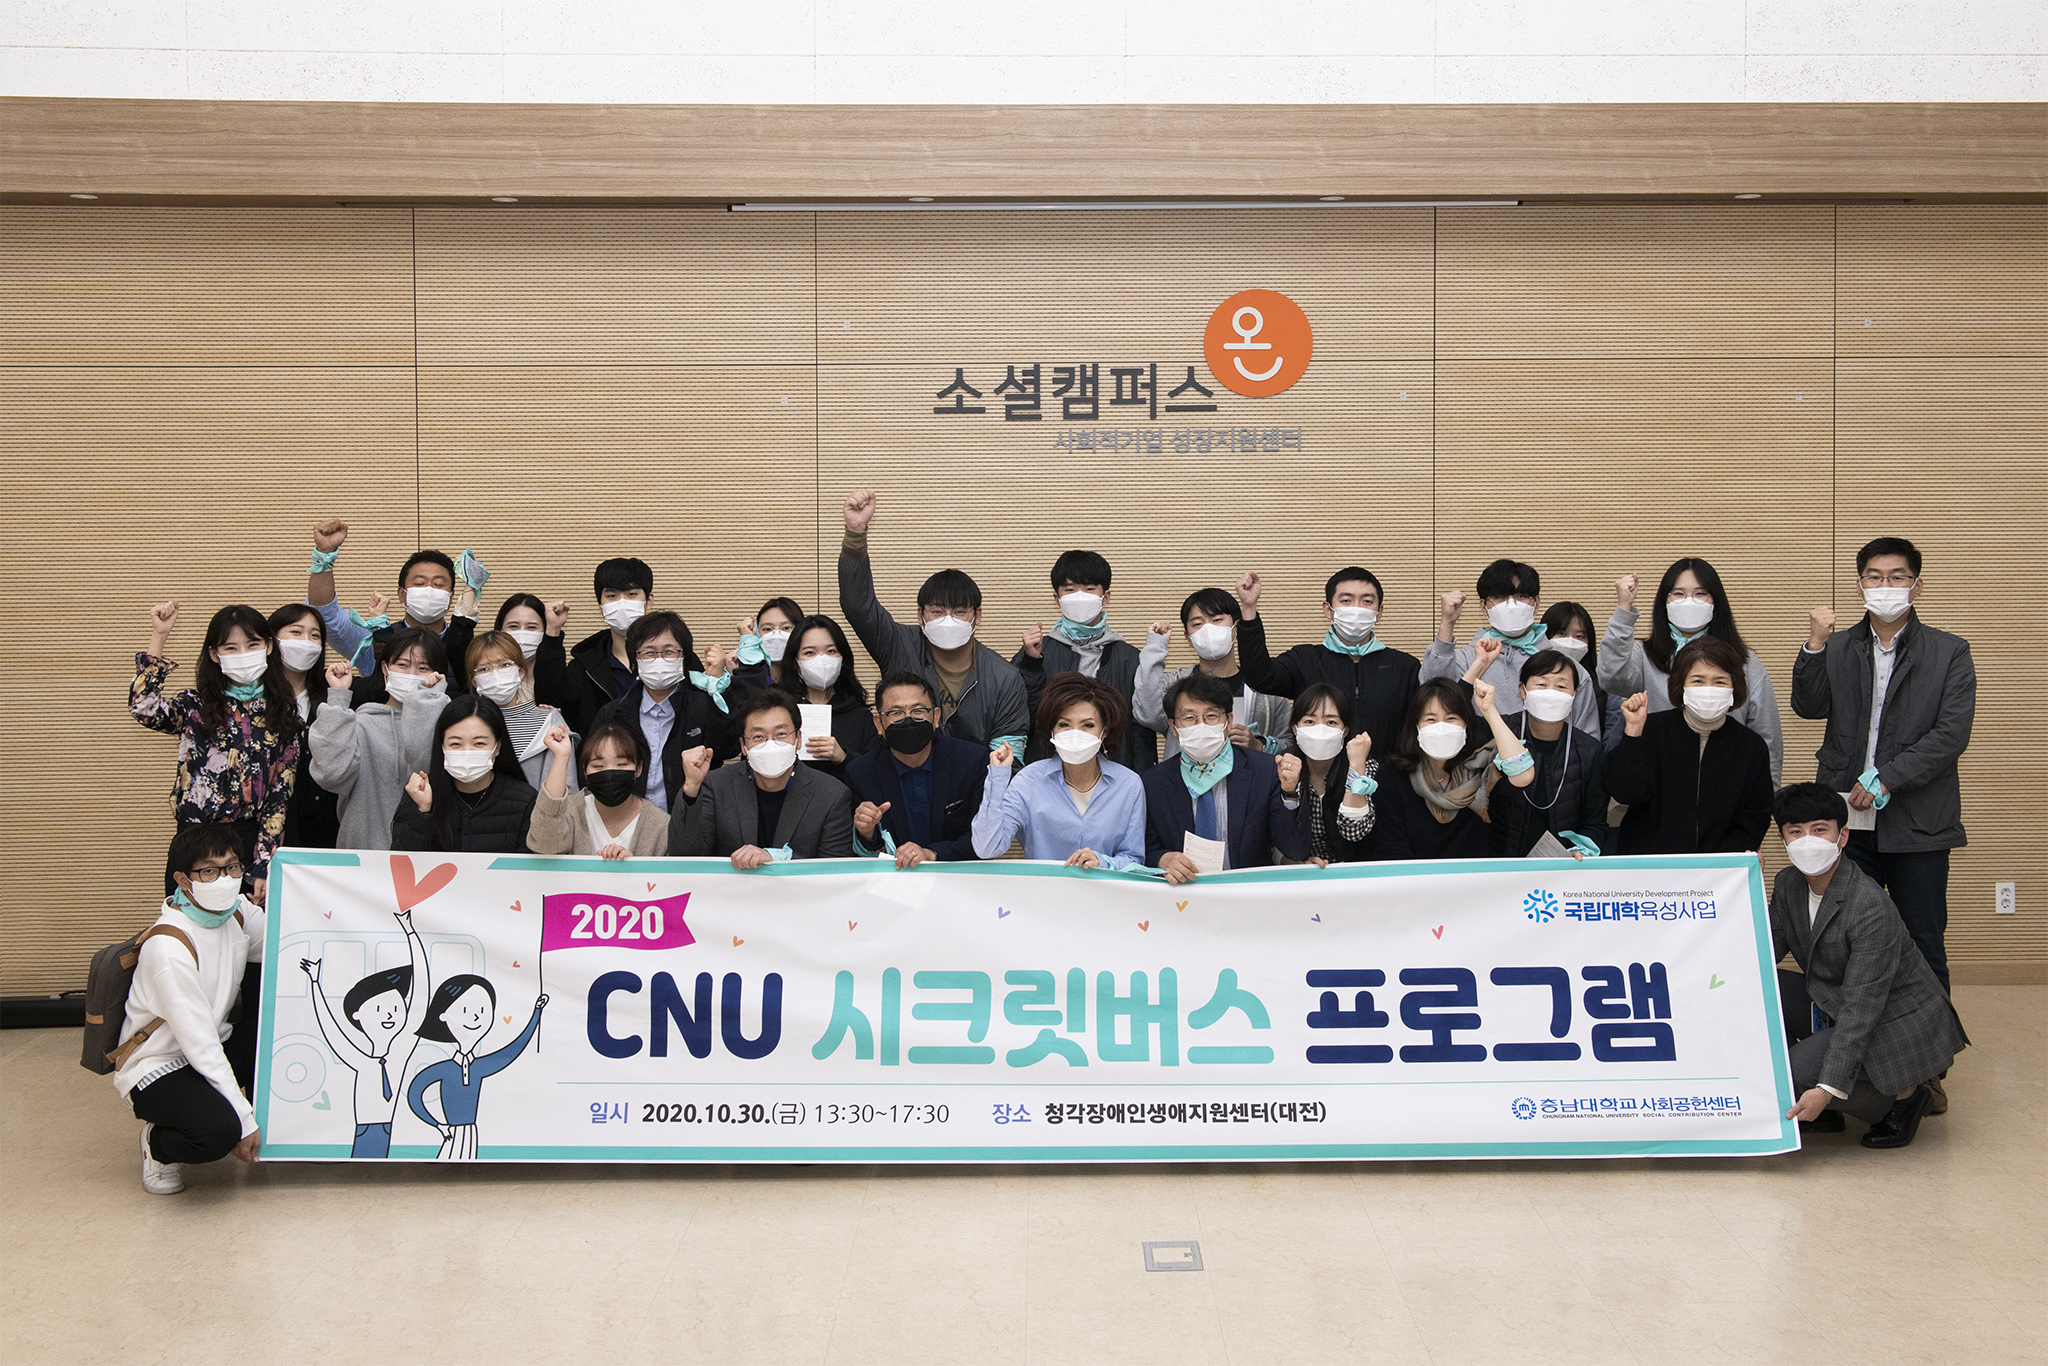 “‘CNU 시크릿 버스’ 타고 사회공헌 활동 함께 했어요” 사진1